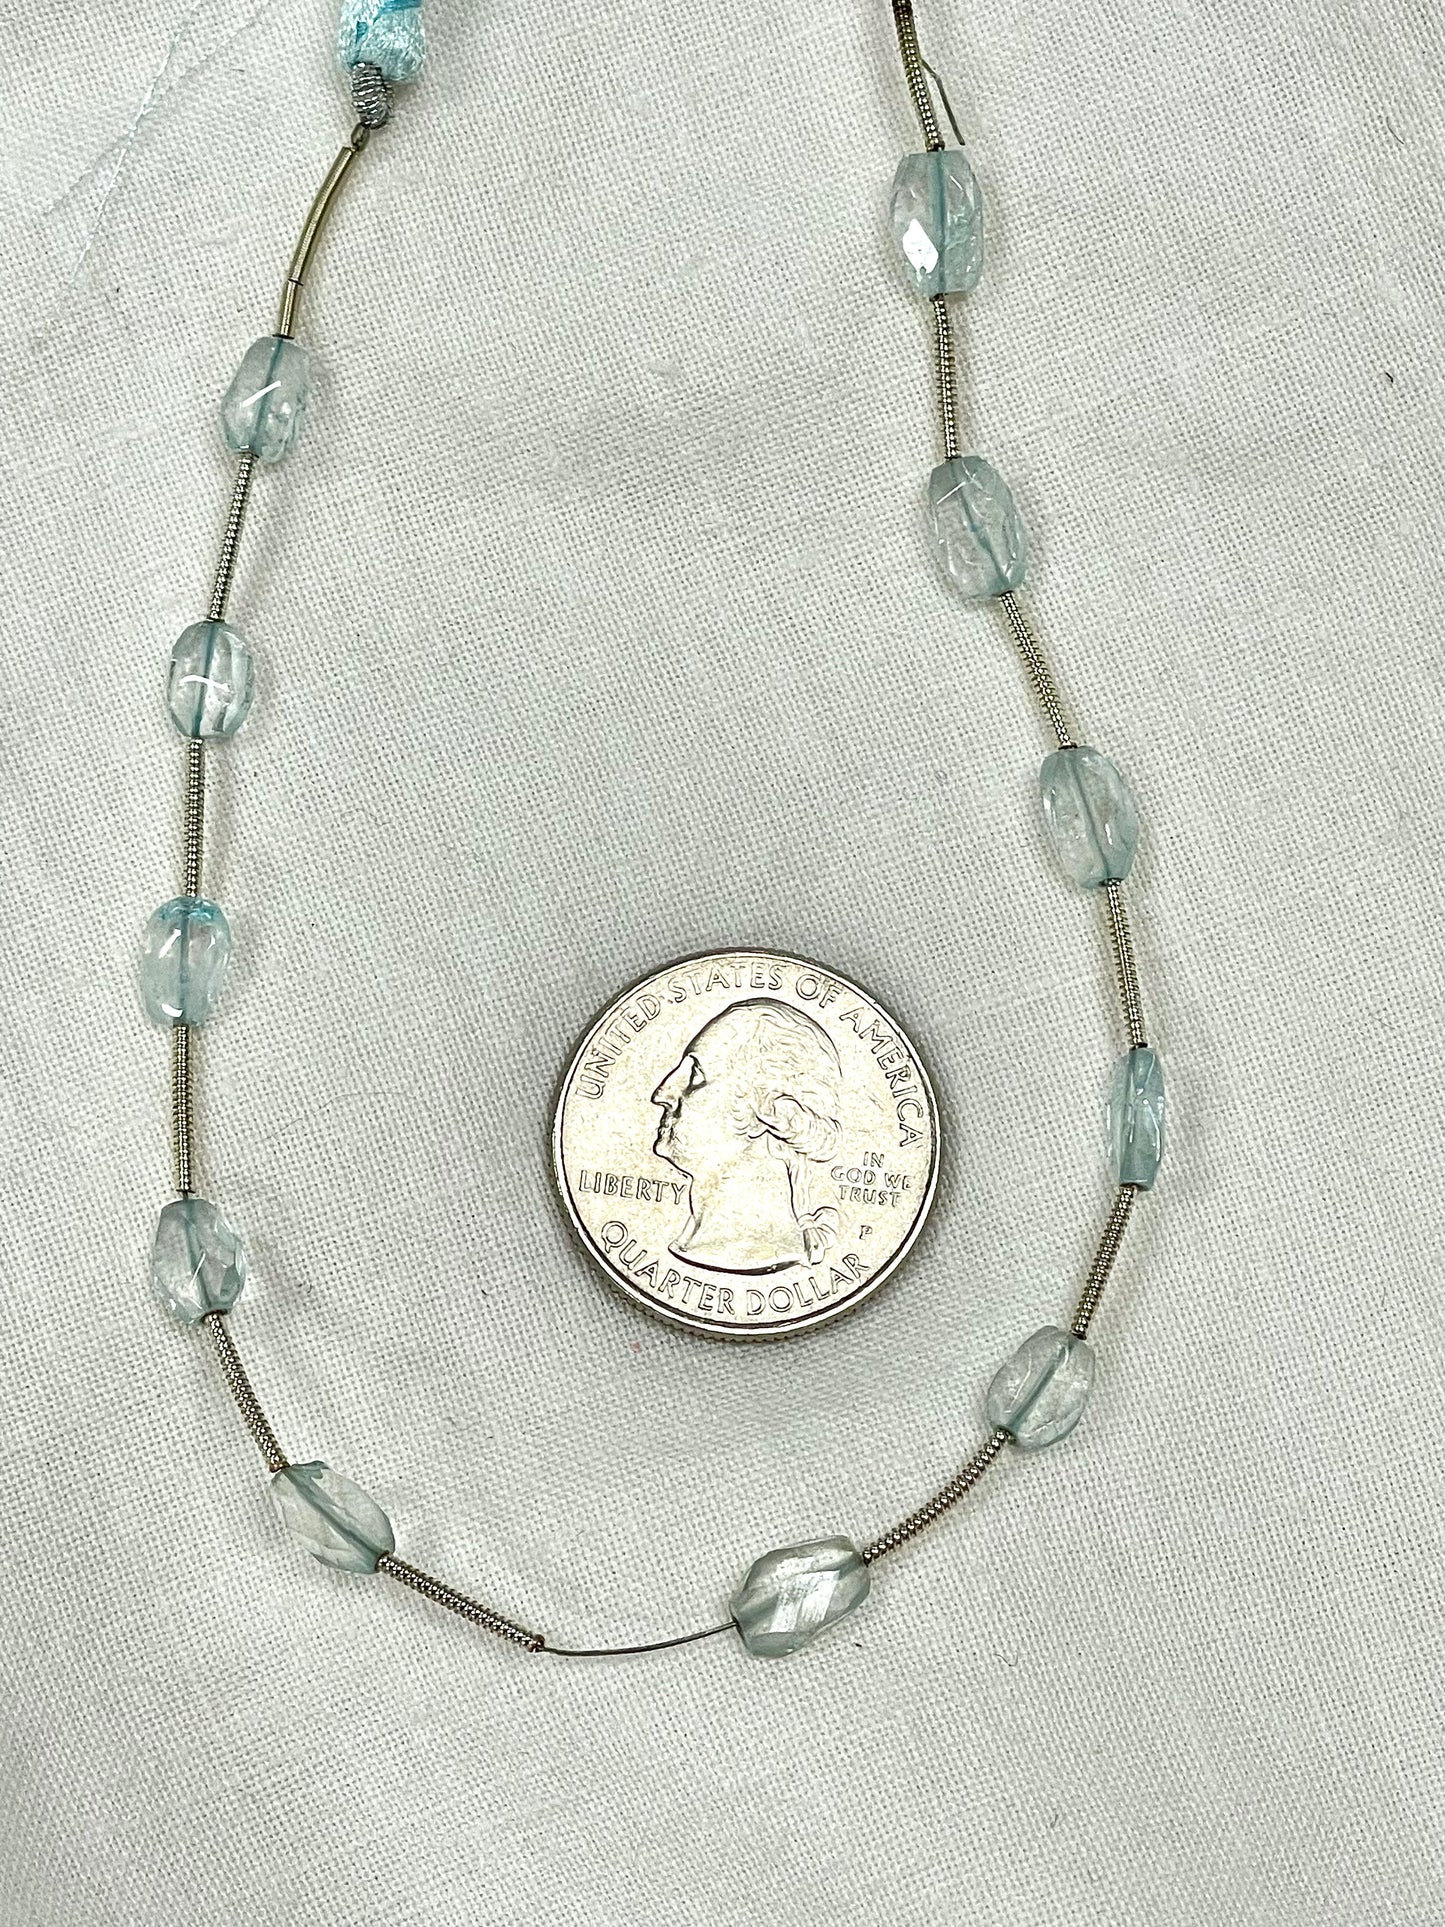 Aquamarine Mixed Shape Gemstone Beads